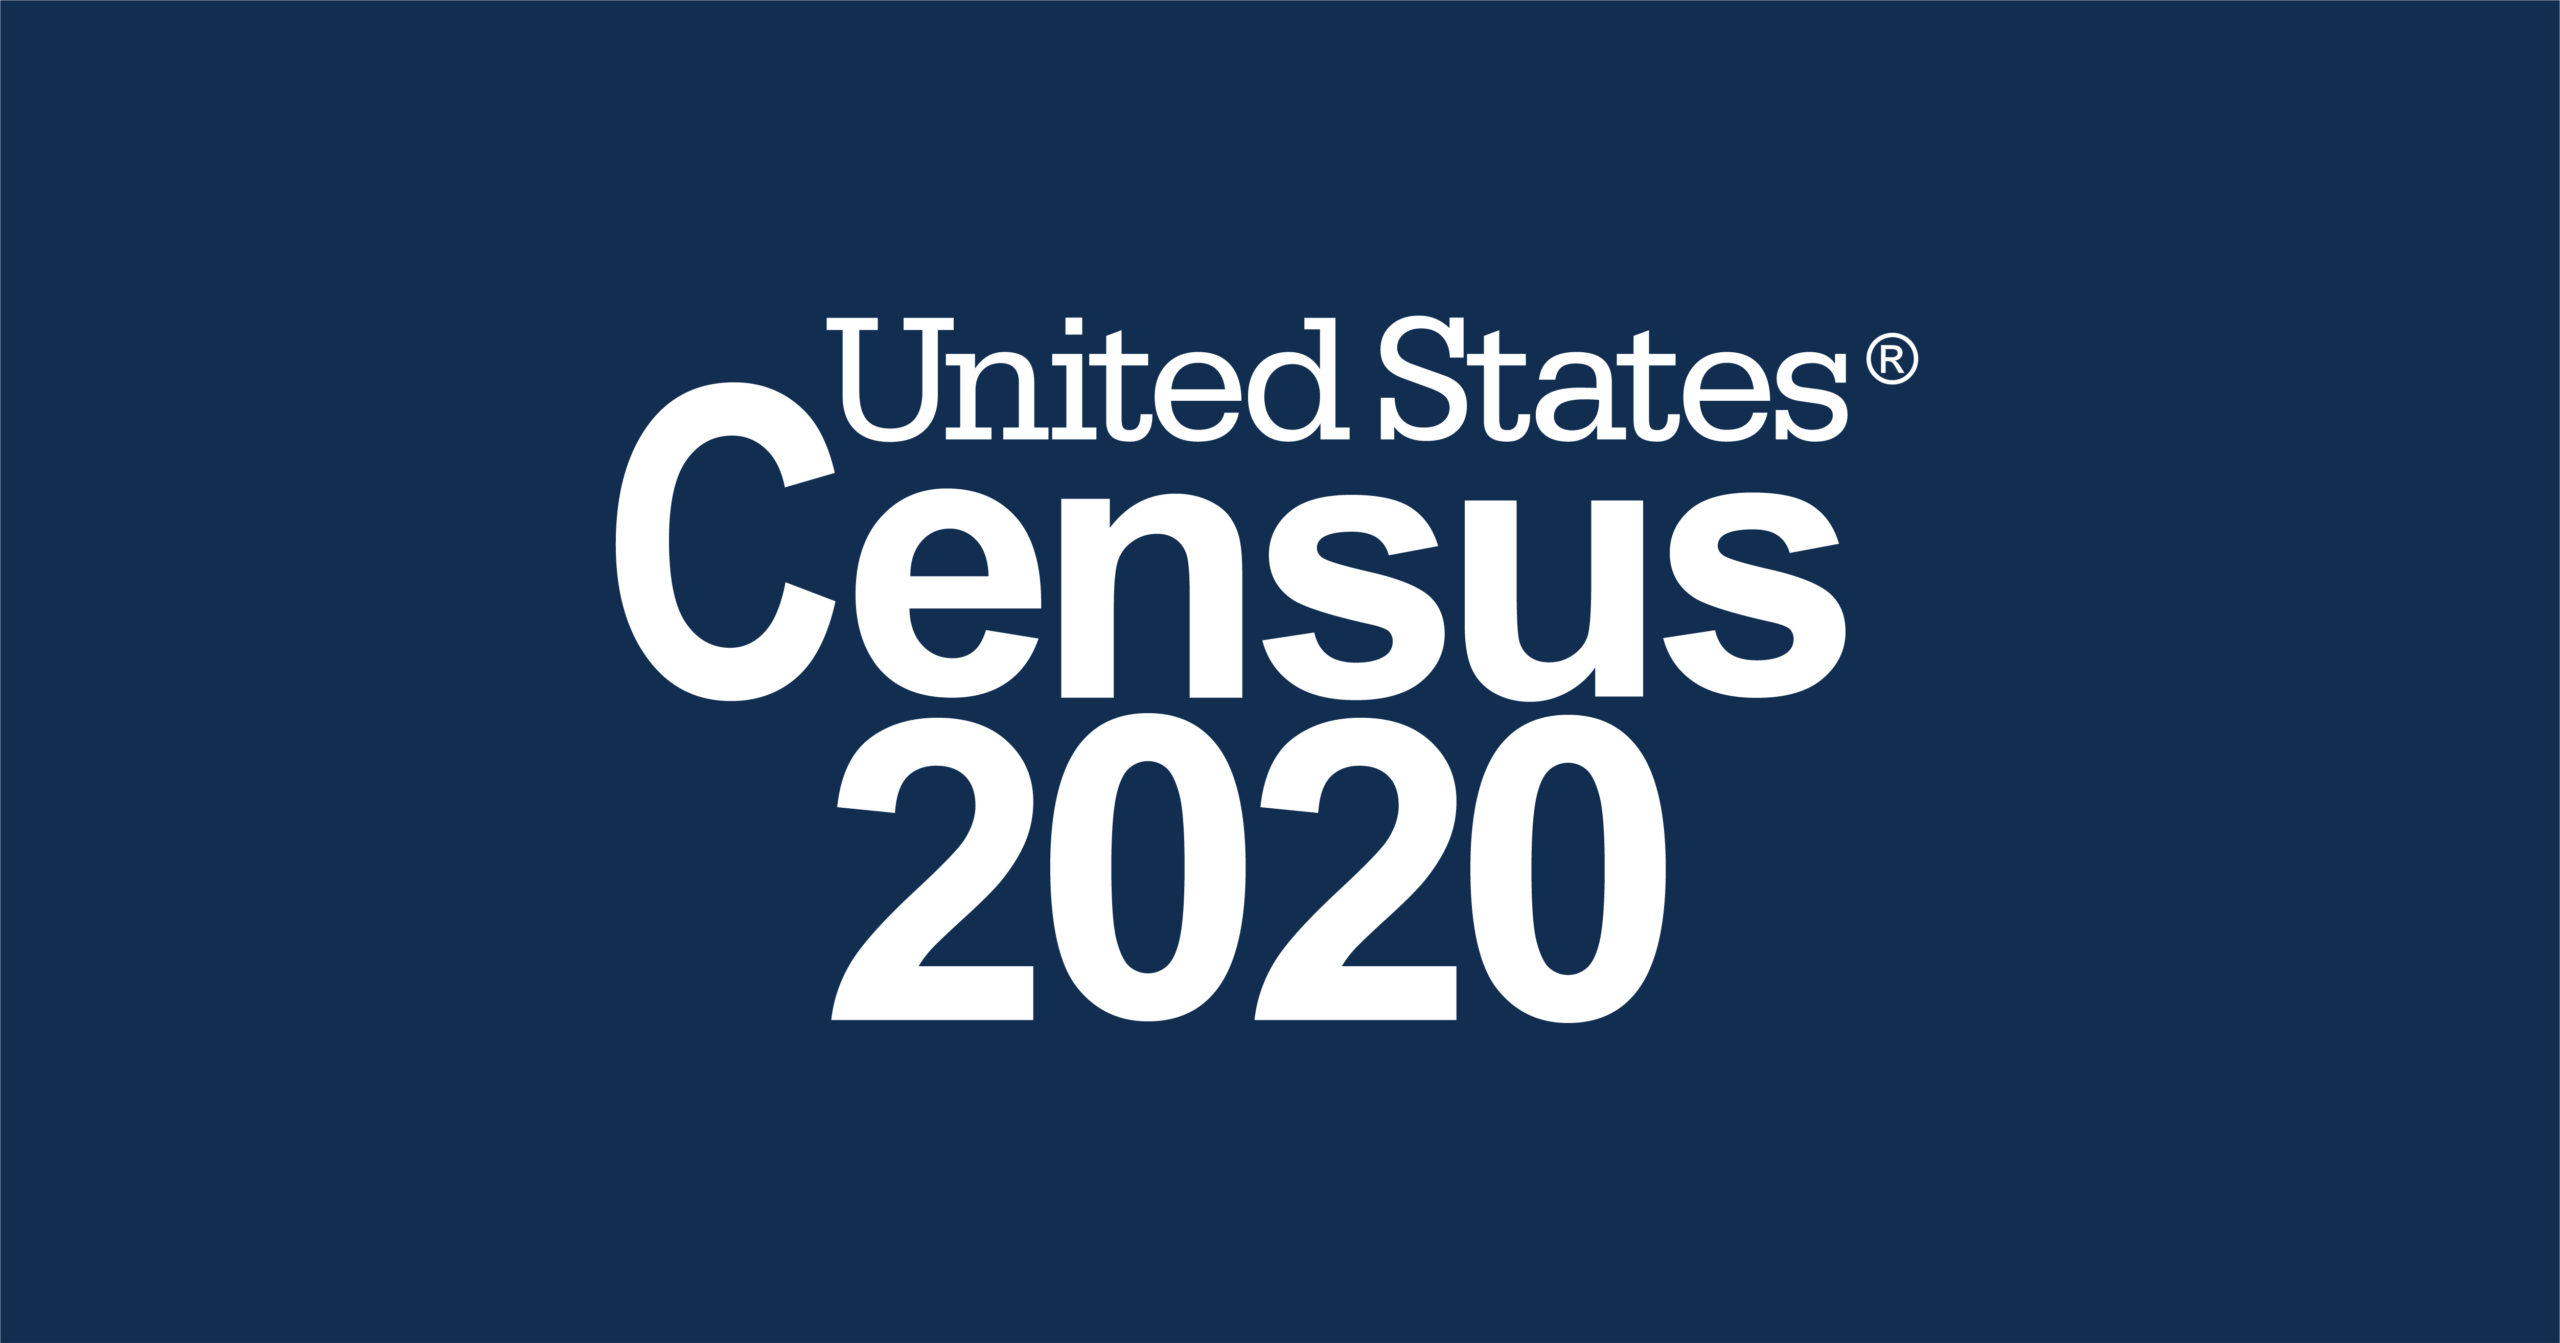 El 62% de los hogares respondieron al censo de 2020